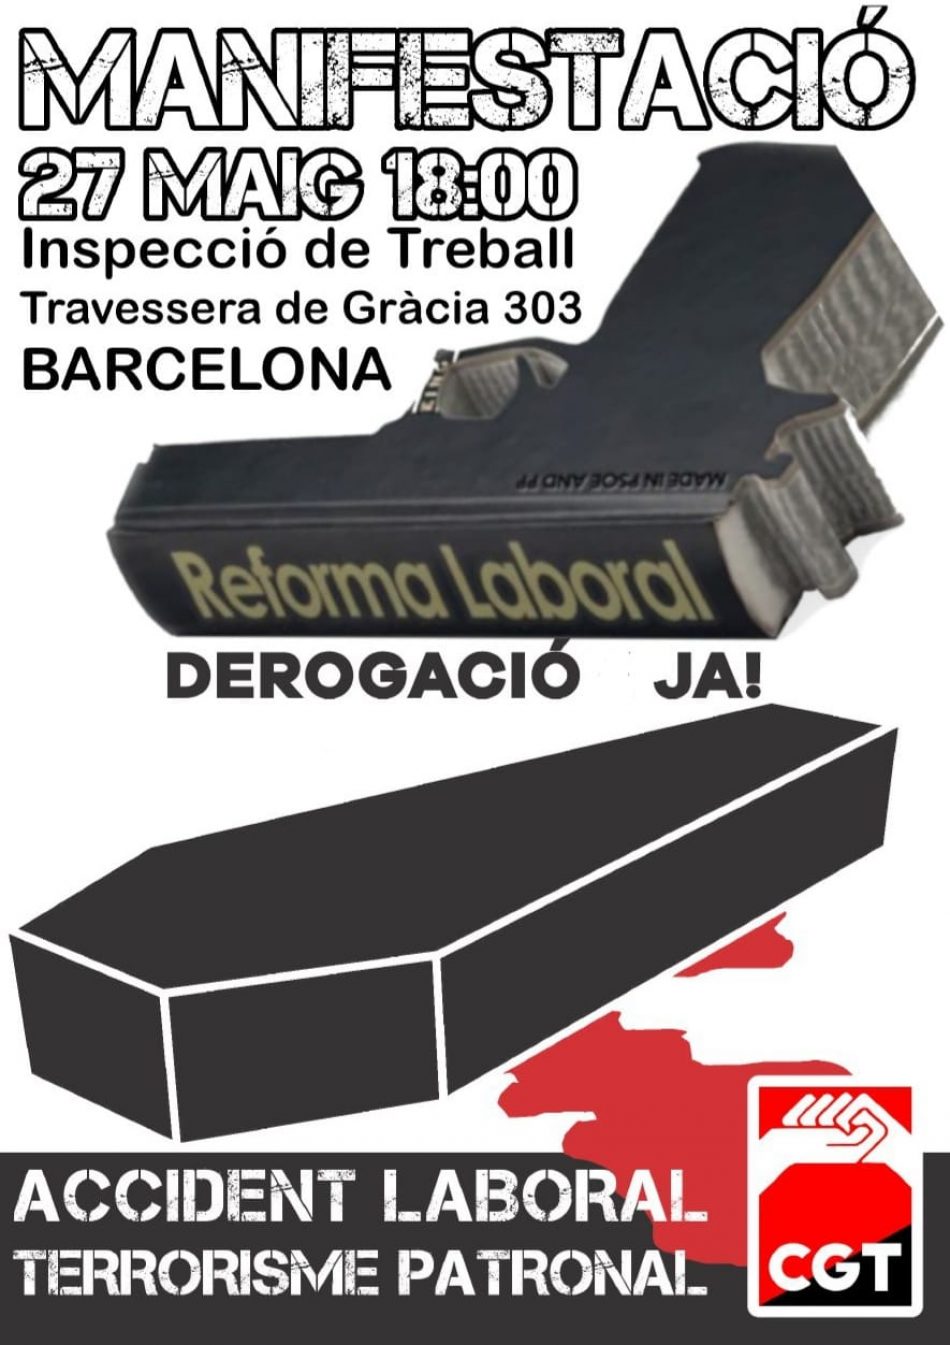 Convoquen manifestació a Barcelona per la derogació reformes laborals